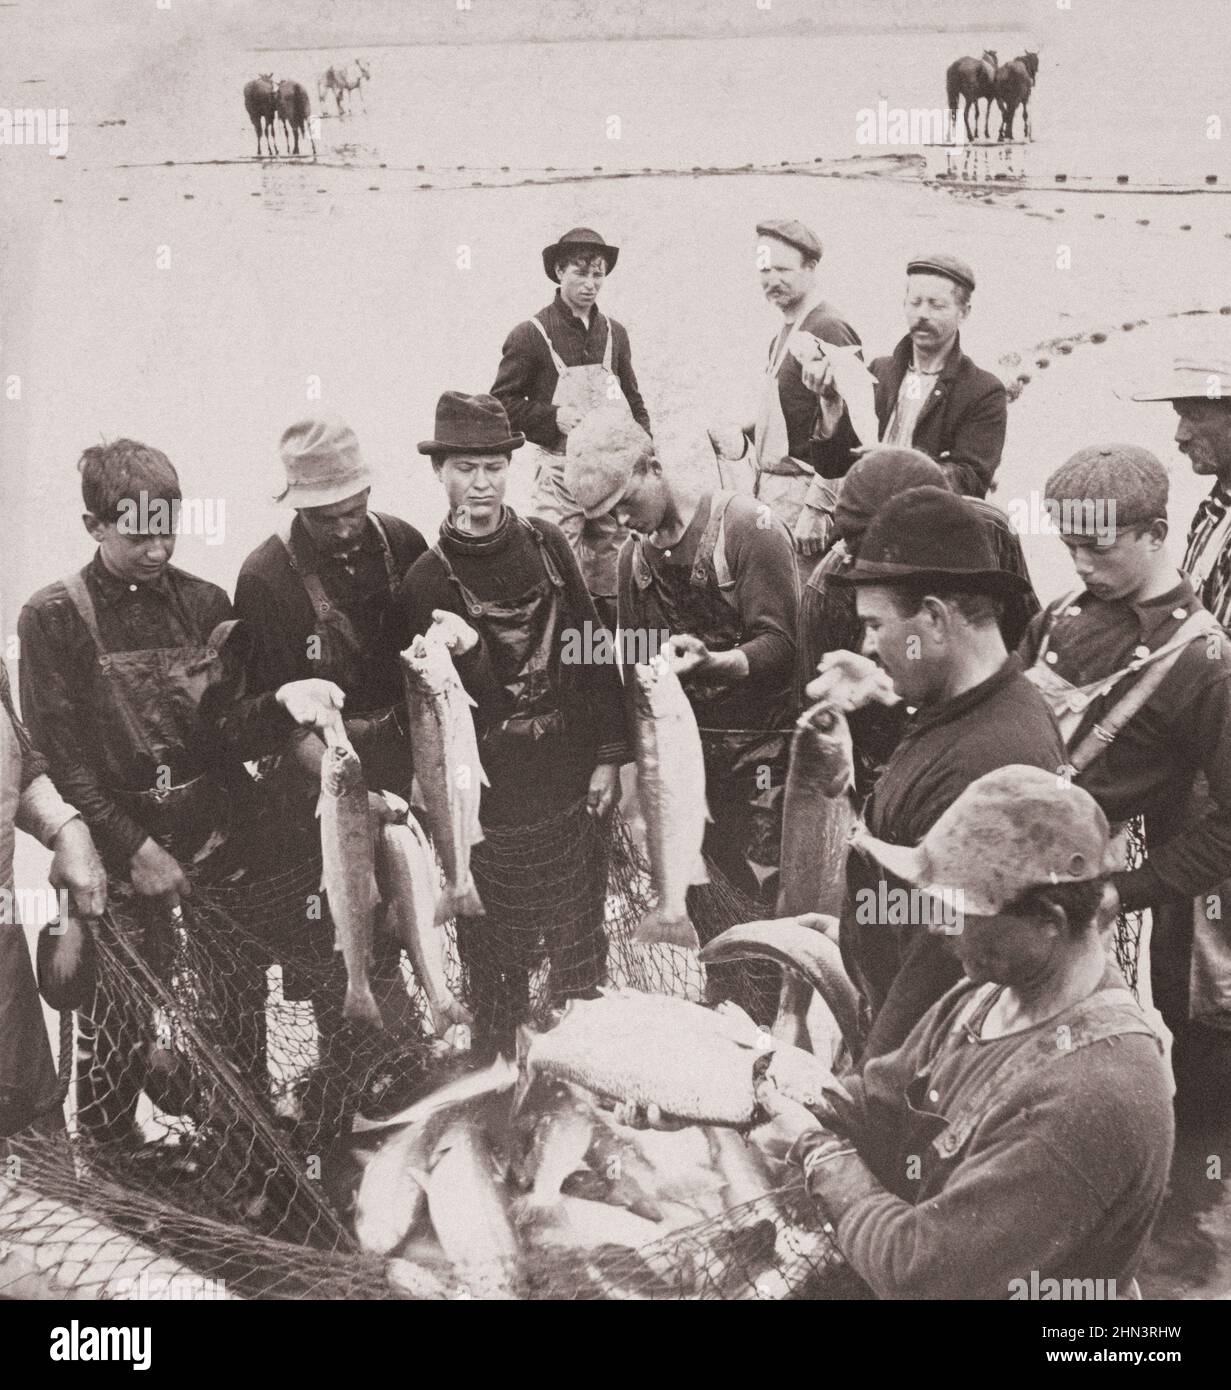 Foto vintage de la industria del salmón de Oregón: Primer recorrido de la temporada. Río Columbia, Oregón, EE.UU. 1904 Hombres con peces en red en primer plano; caballos por riv Foto de stock